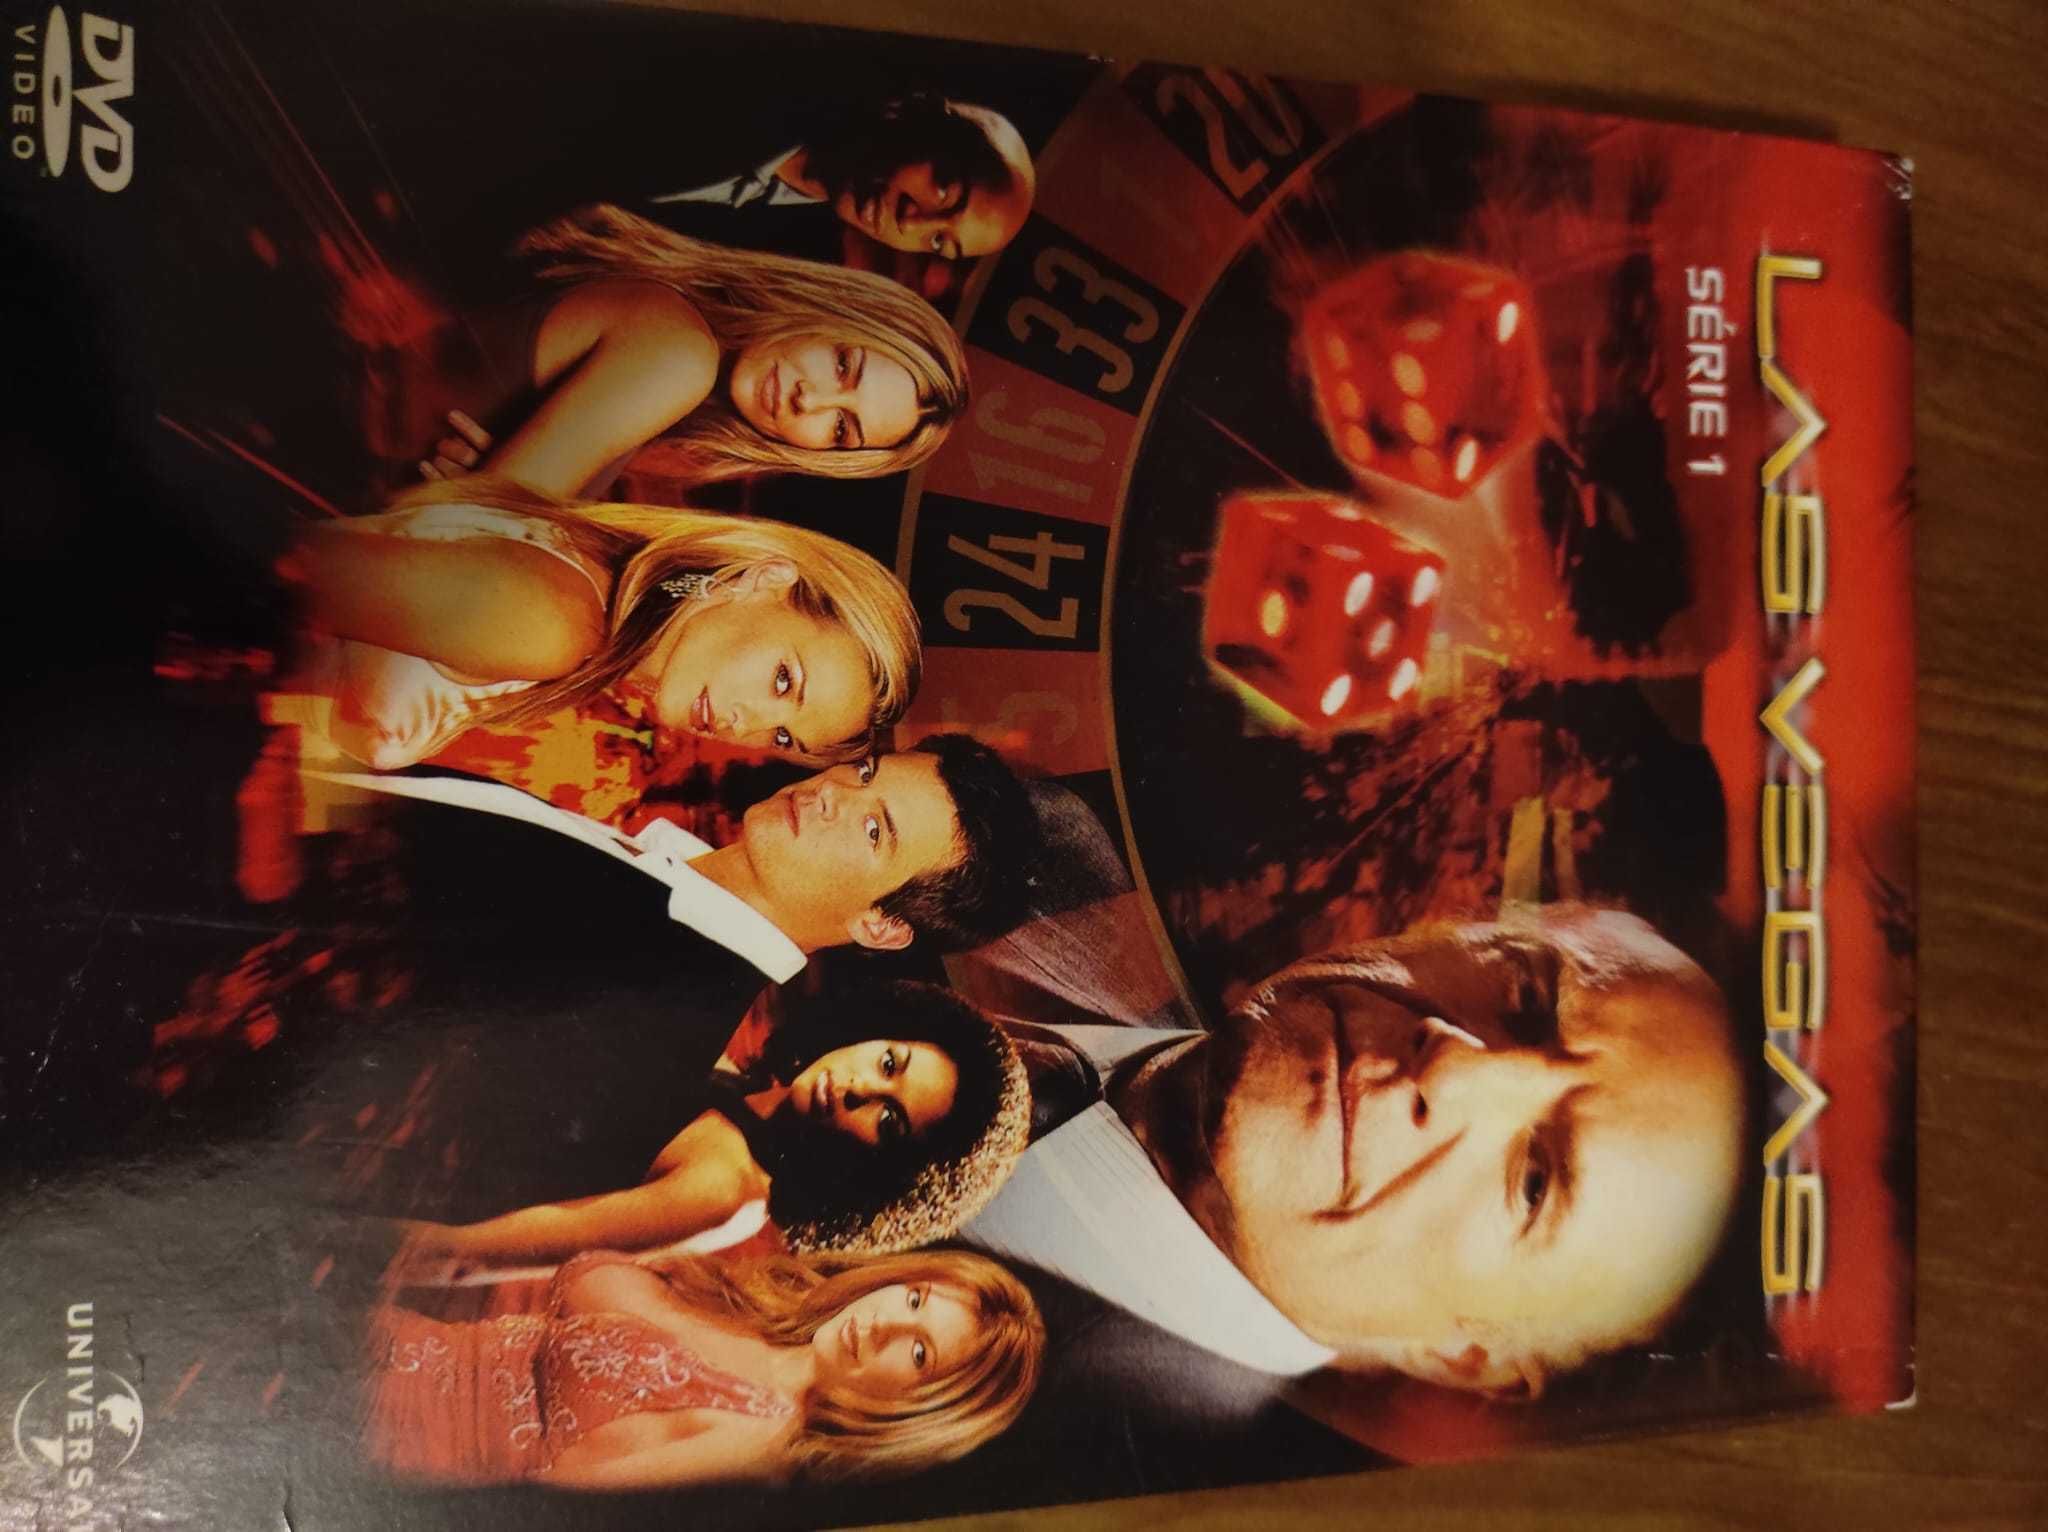 Serie Las Vegas temporada 1, 2 e 3 em formato DVD